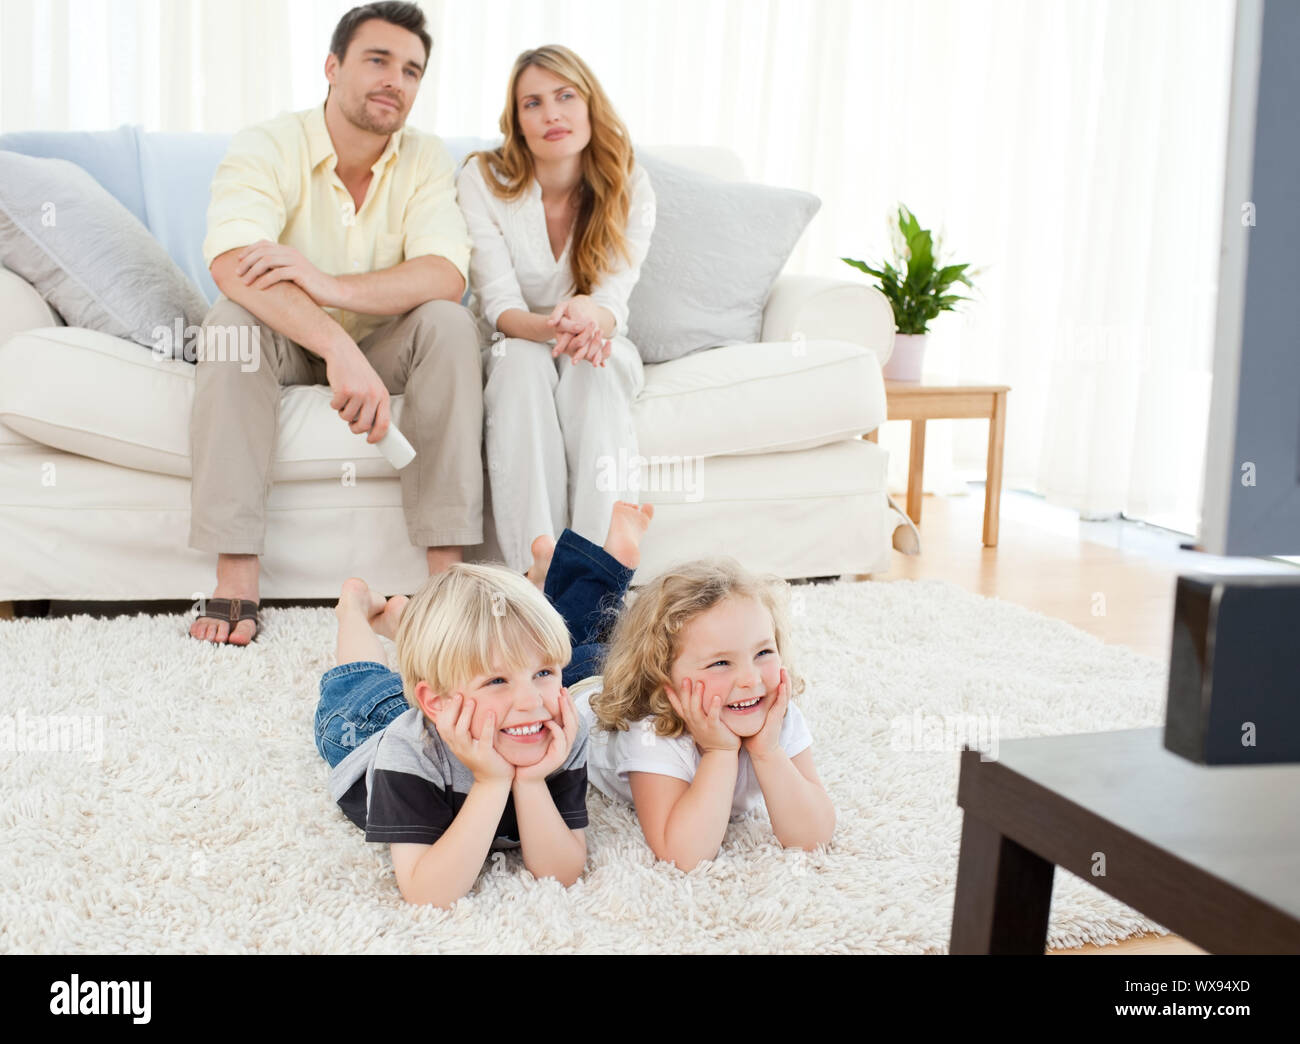 My family room. Родители и дети. Семья на диване. Семья сидит в гостиннтй. Семья в интерьере.